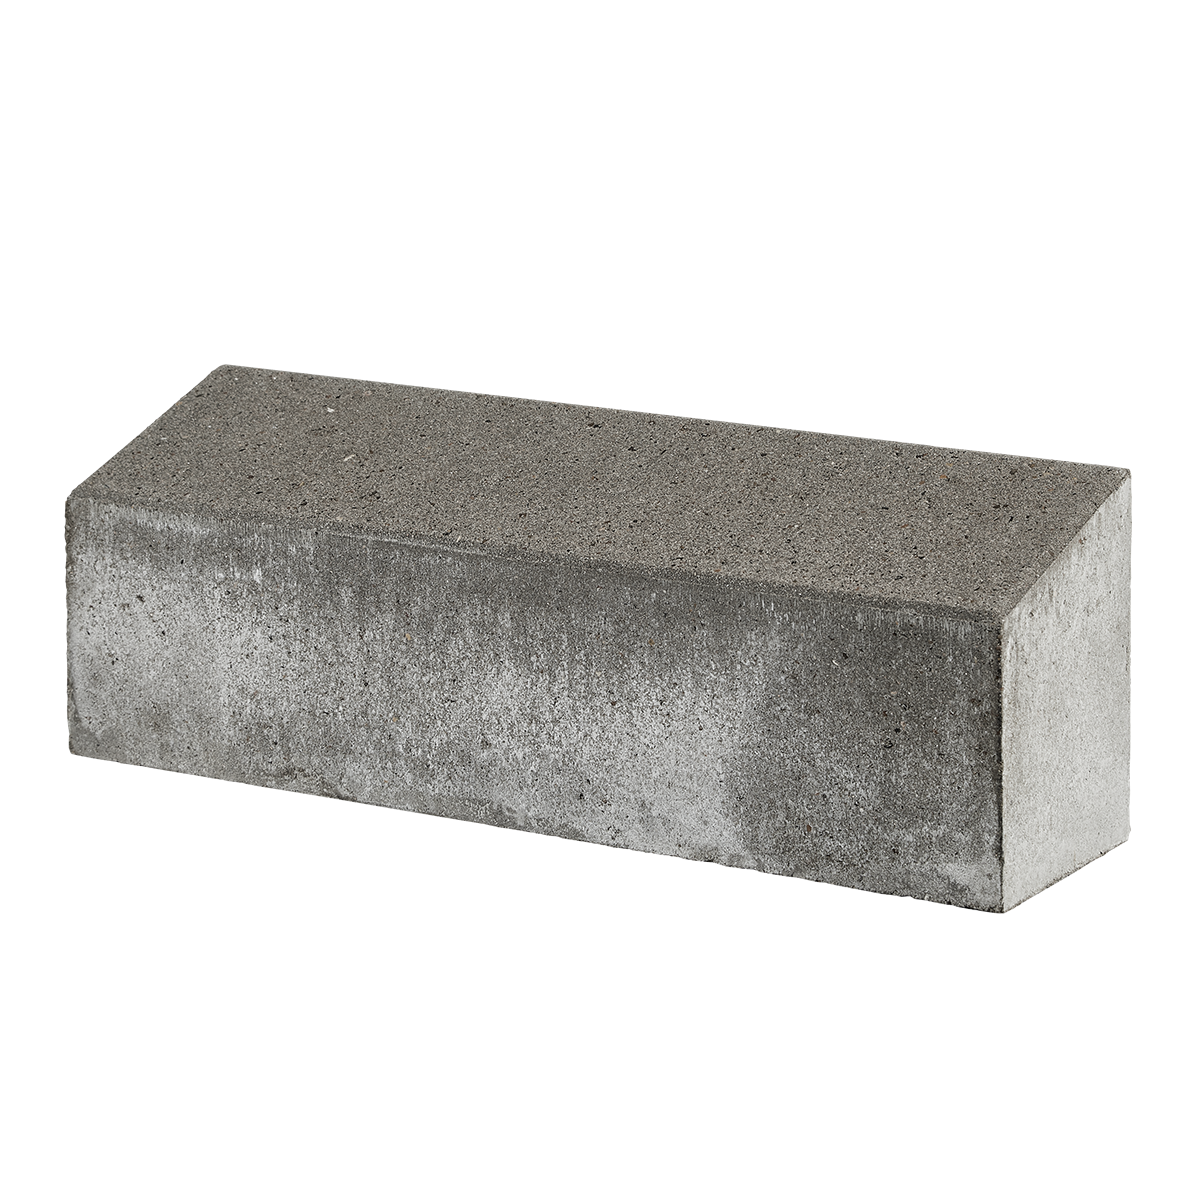 Albertslund-tiefbordsteine 15x15/20x60 cm Grau Schräge Oberkante 